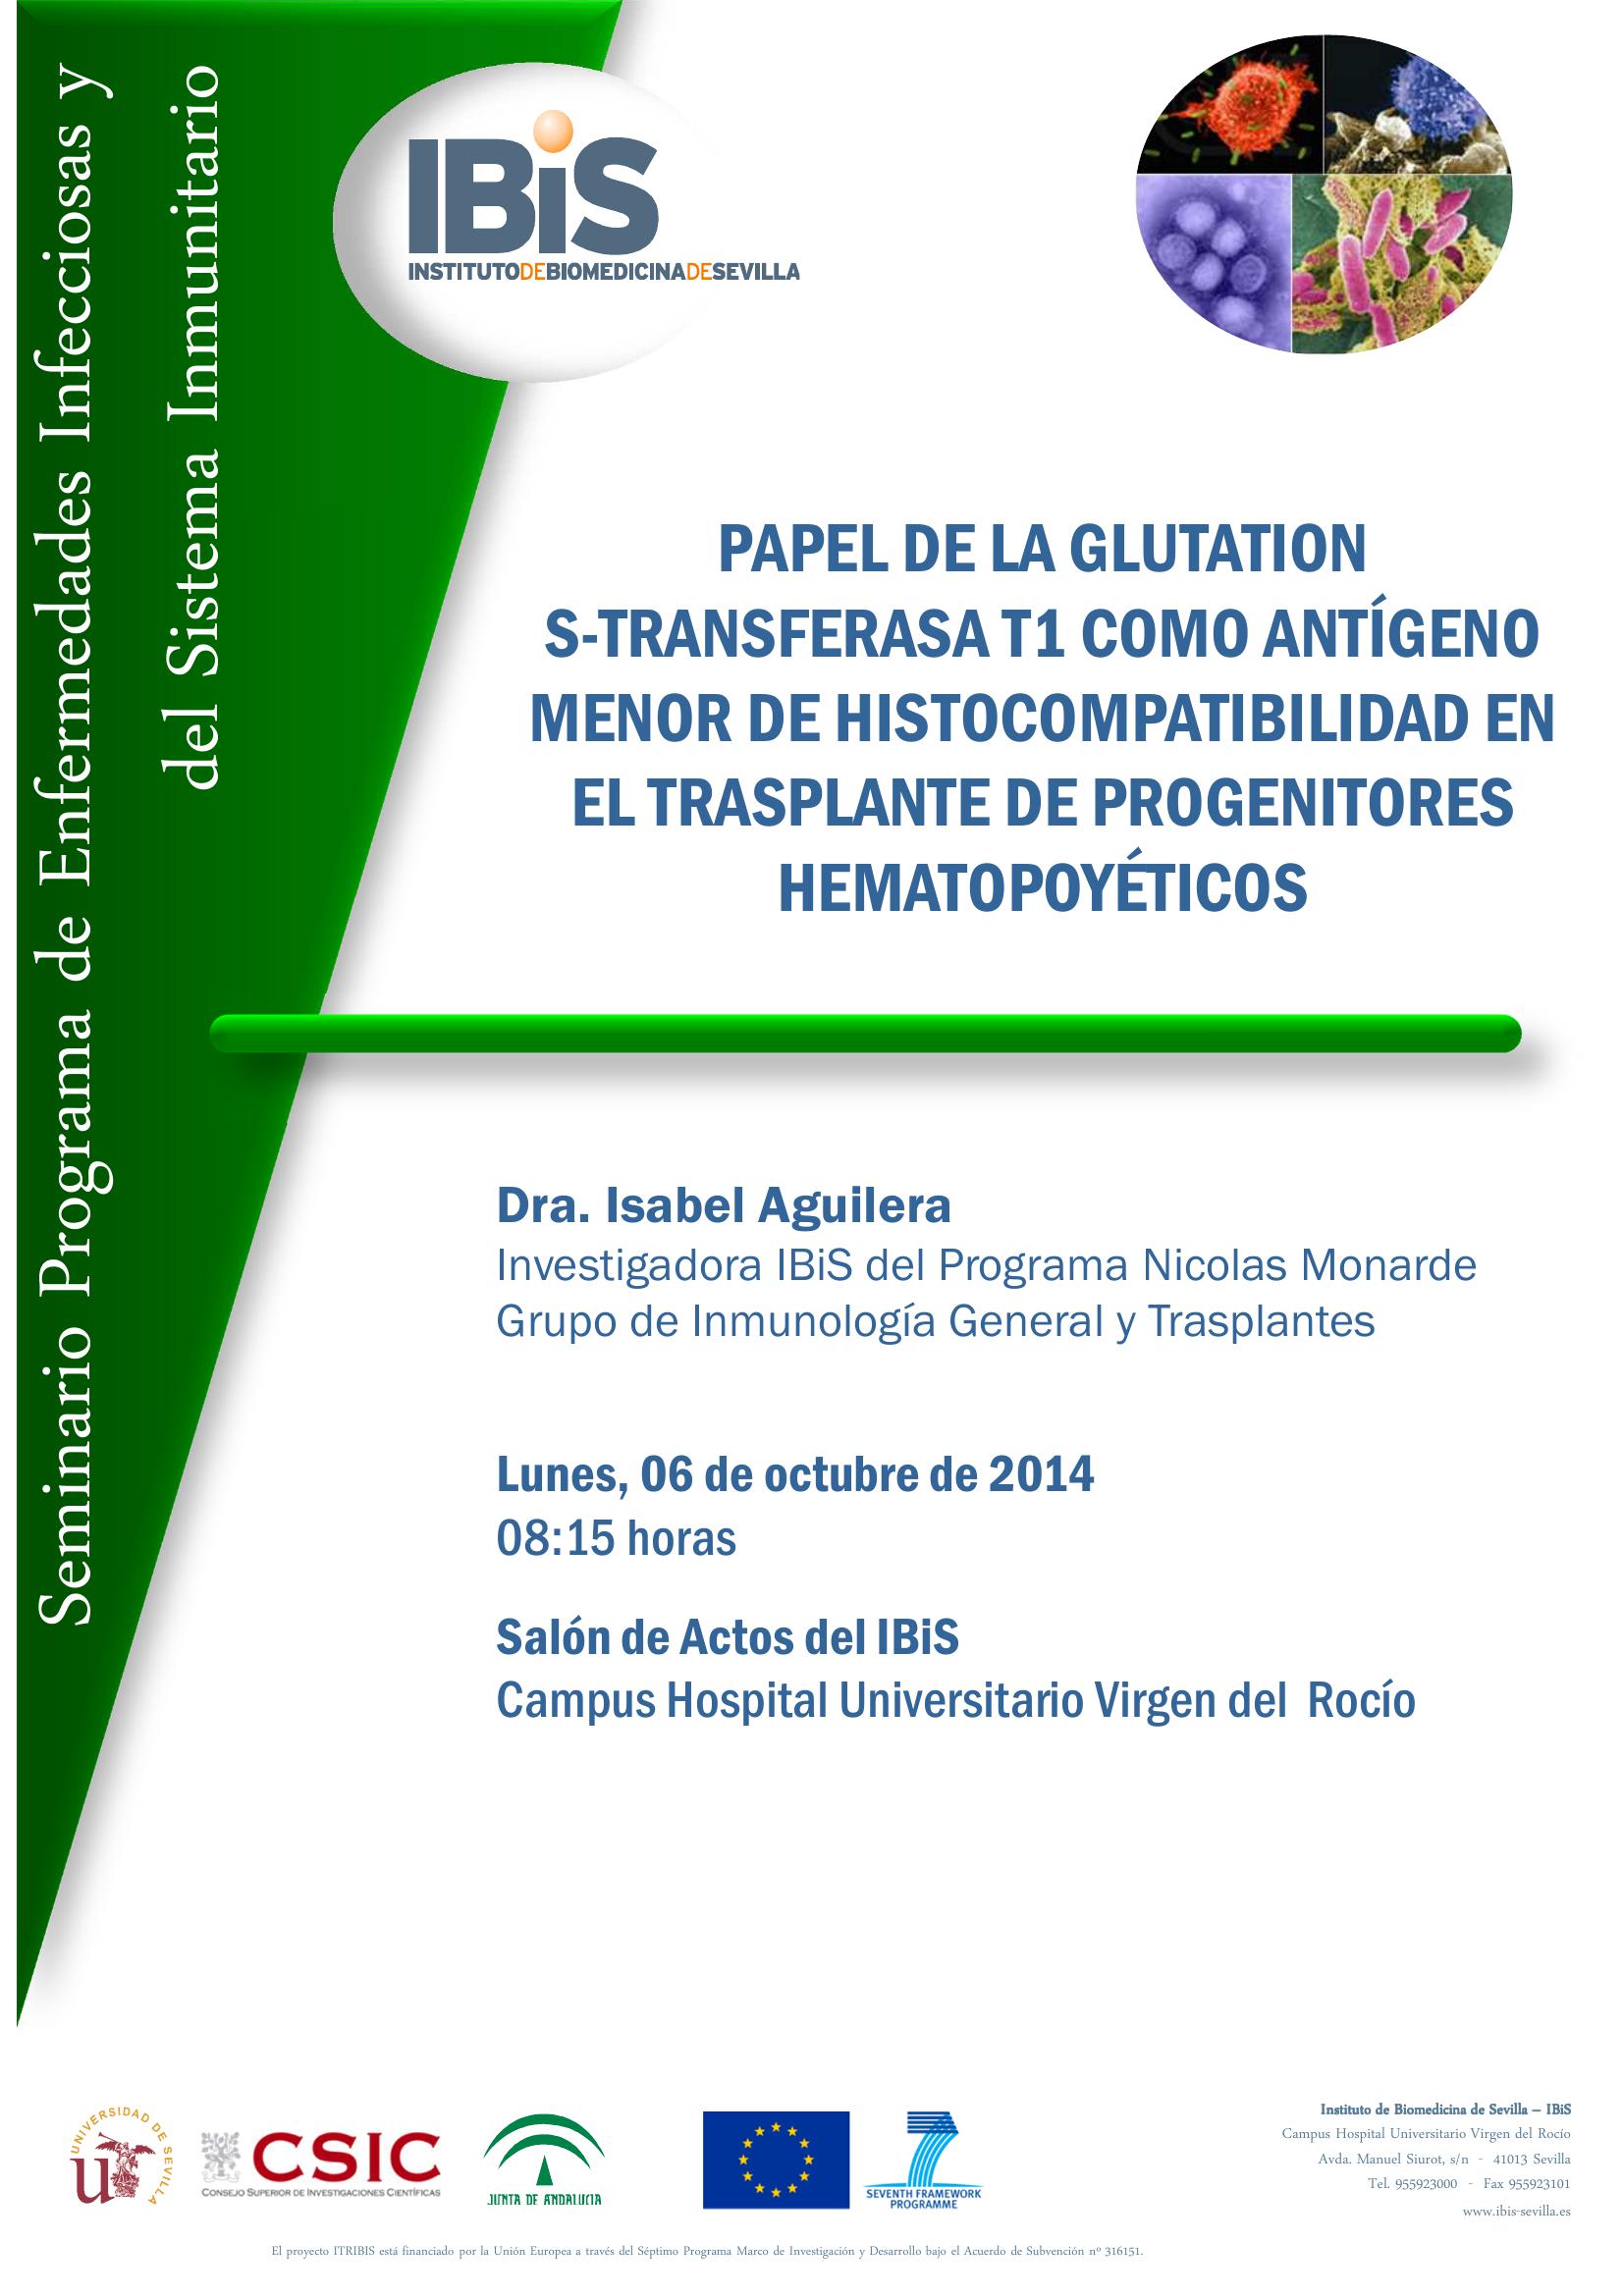 Poster: PAPEL DE LA GLUTATION  S-TRANSFERASA T1 COMO ANTÍGENO MENOR DE HISTOCOMPATIBILIDAD EN EL TRASPLANTE DE PROGENITORES HEMATOPOYÉTICOS